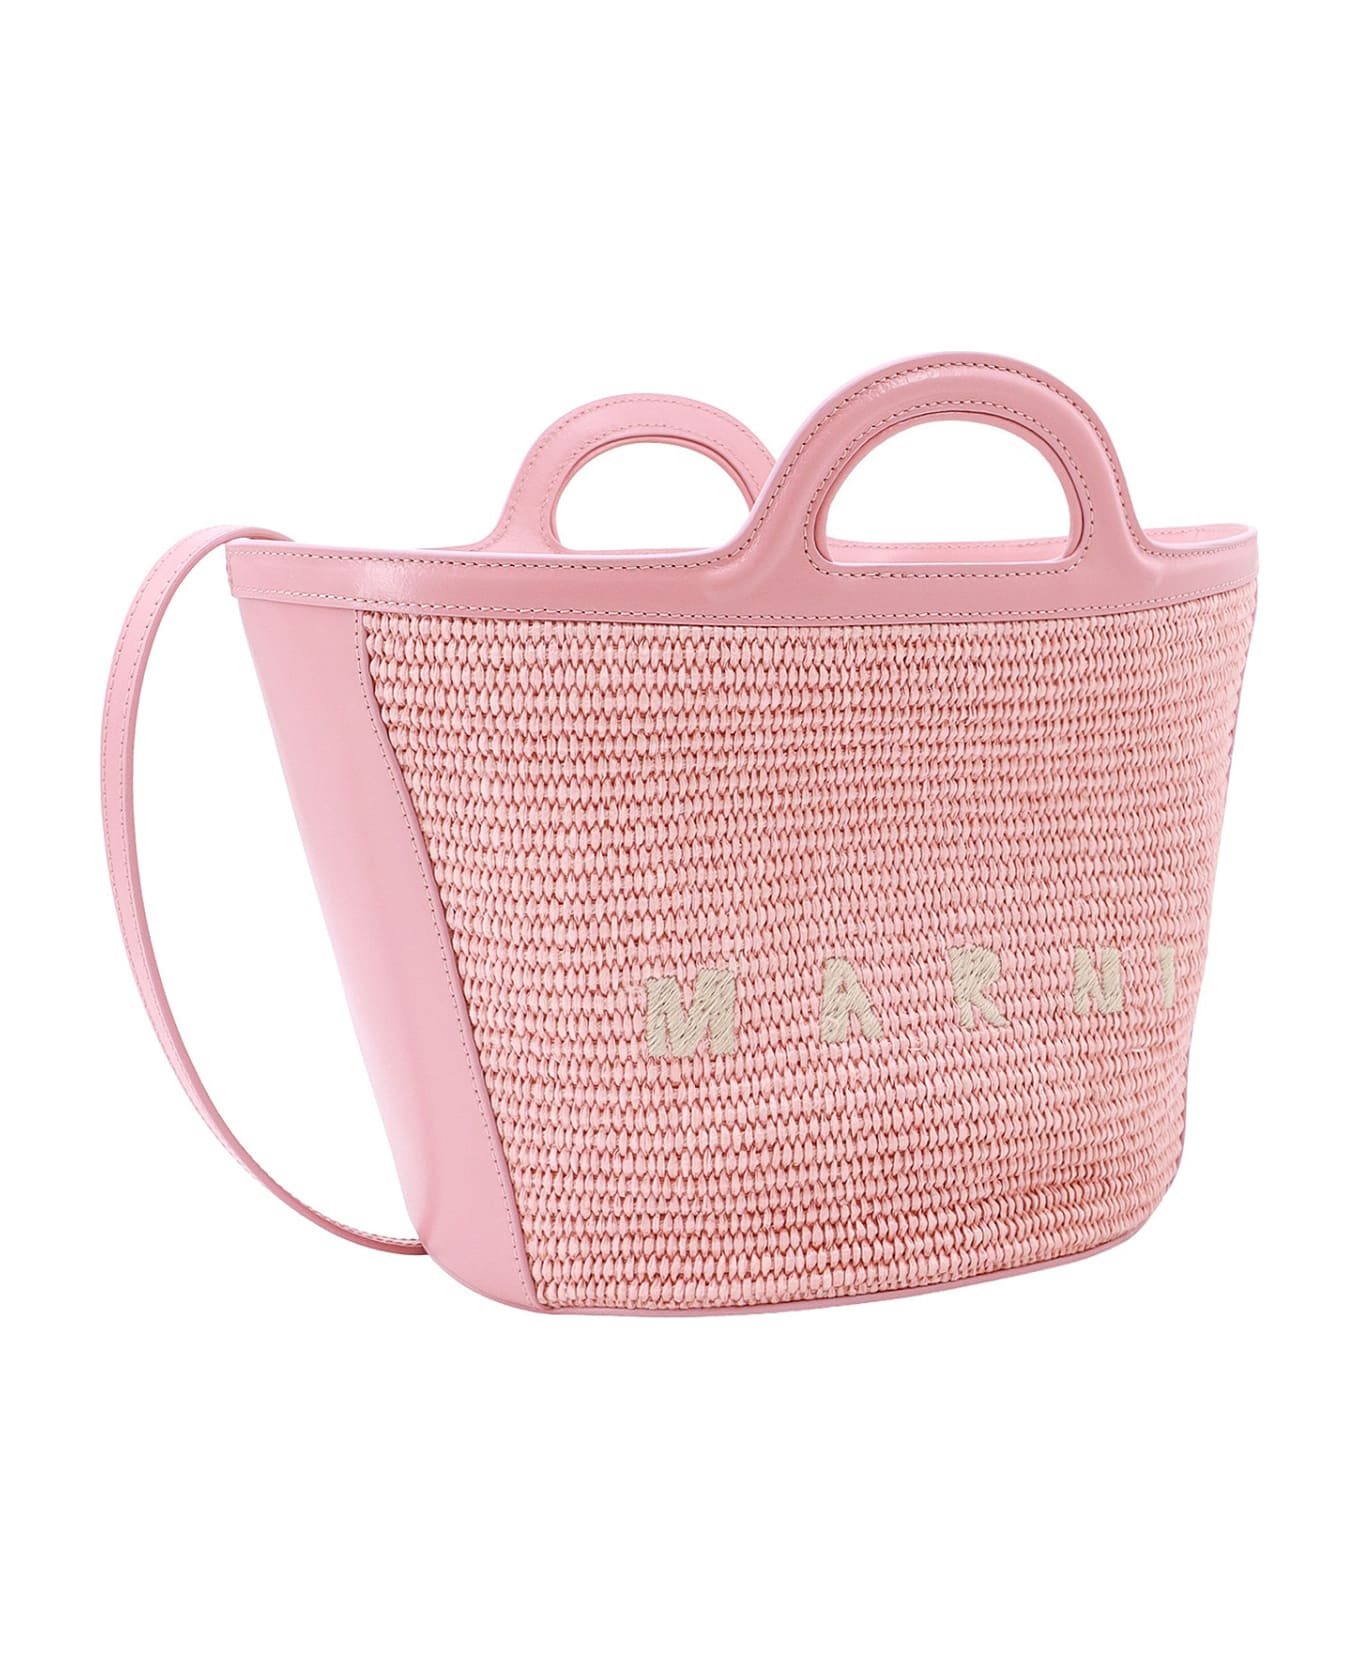 Marni Tropicalia Handbag - Pink